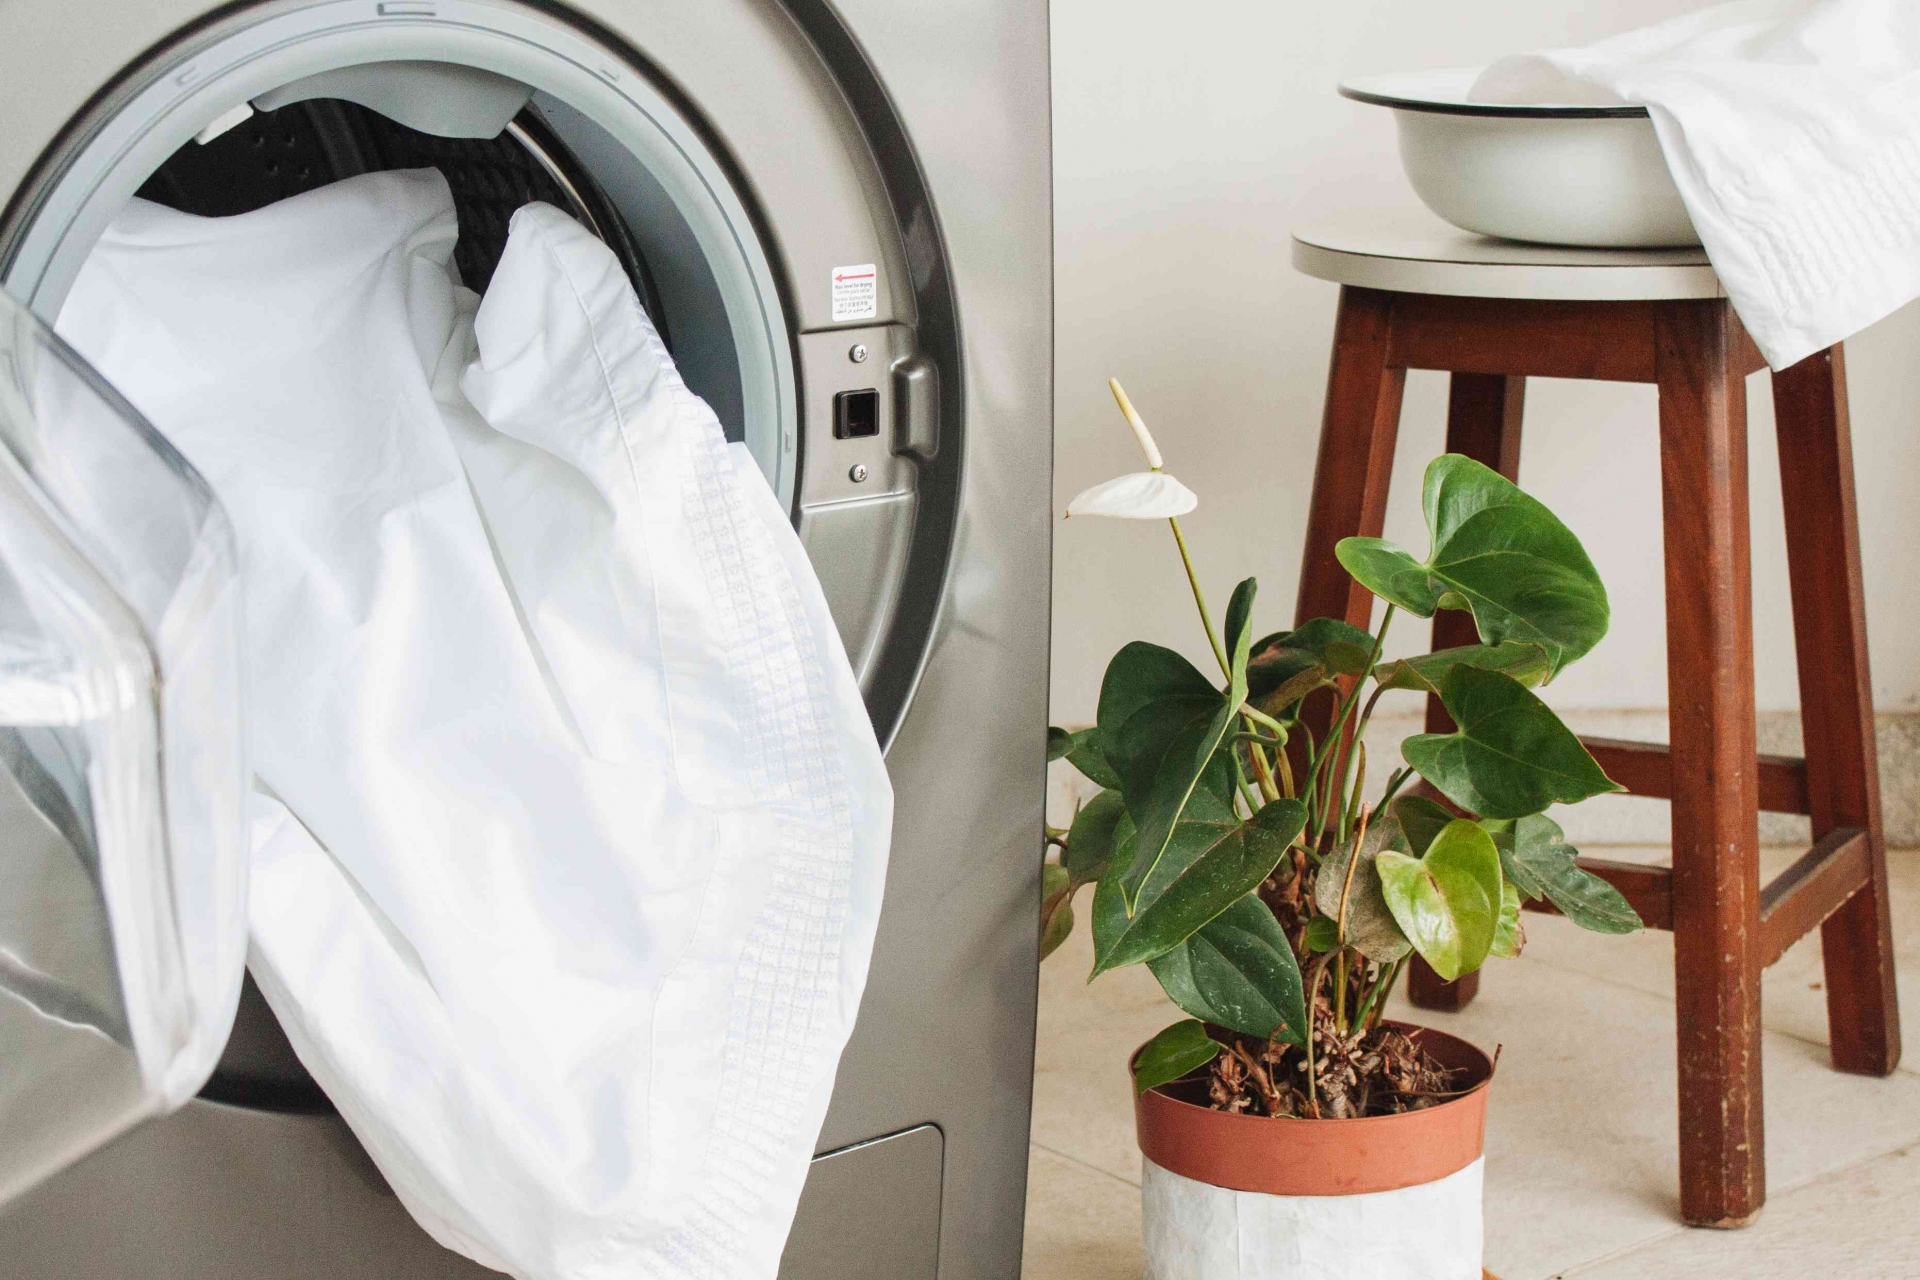 Tháo tấm bọc nệm và cho vào máy giặt, giặt như quần áo thông thường. 